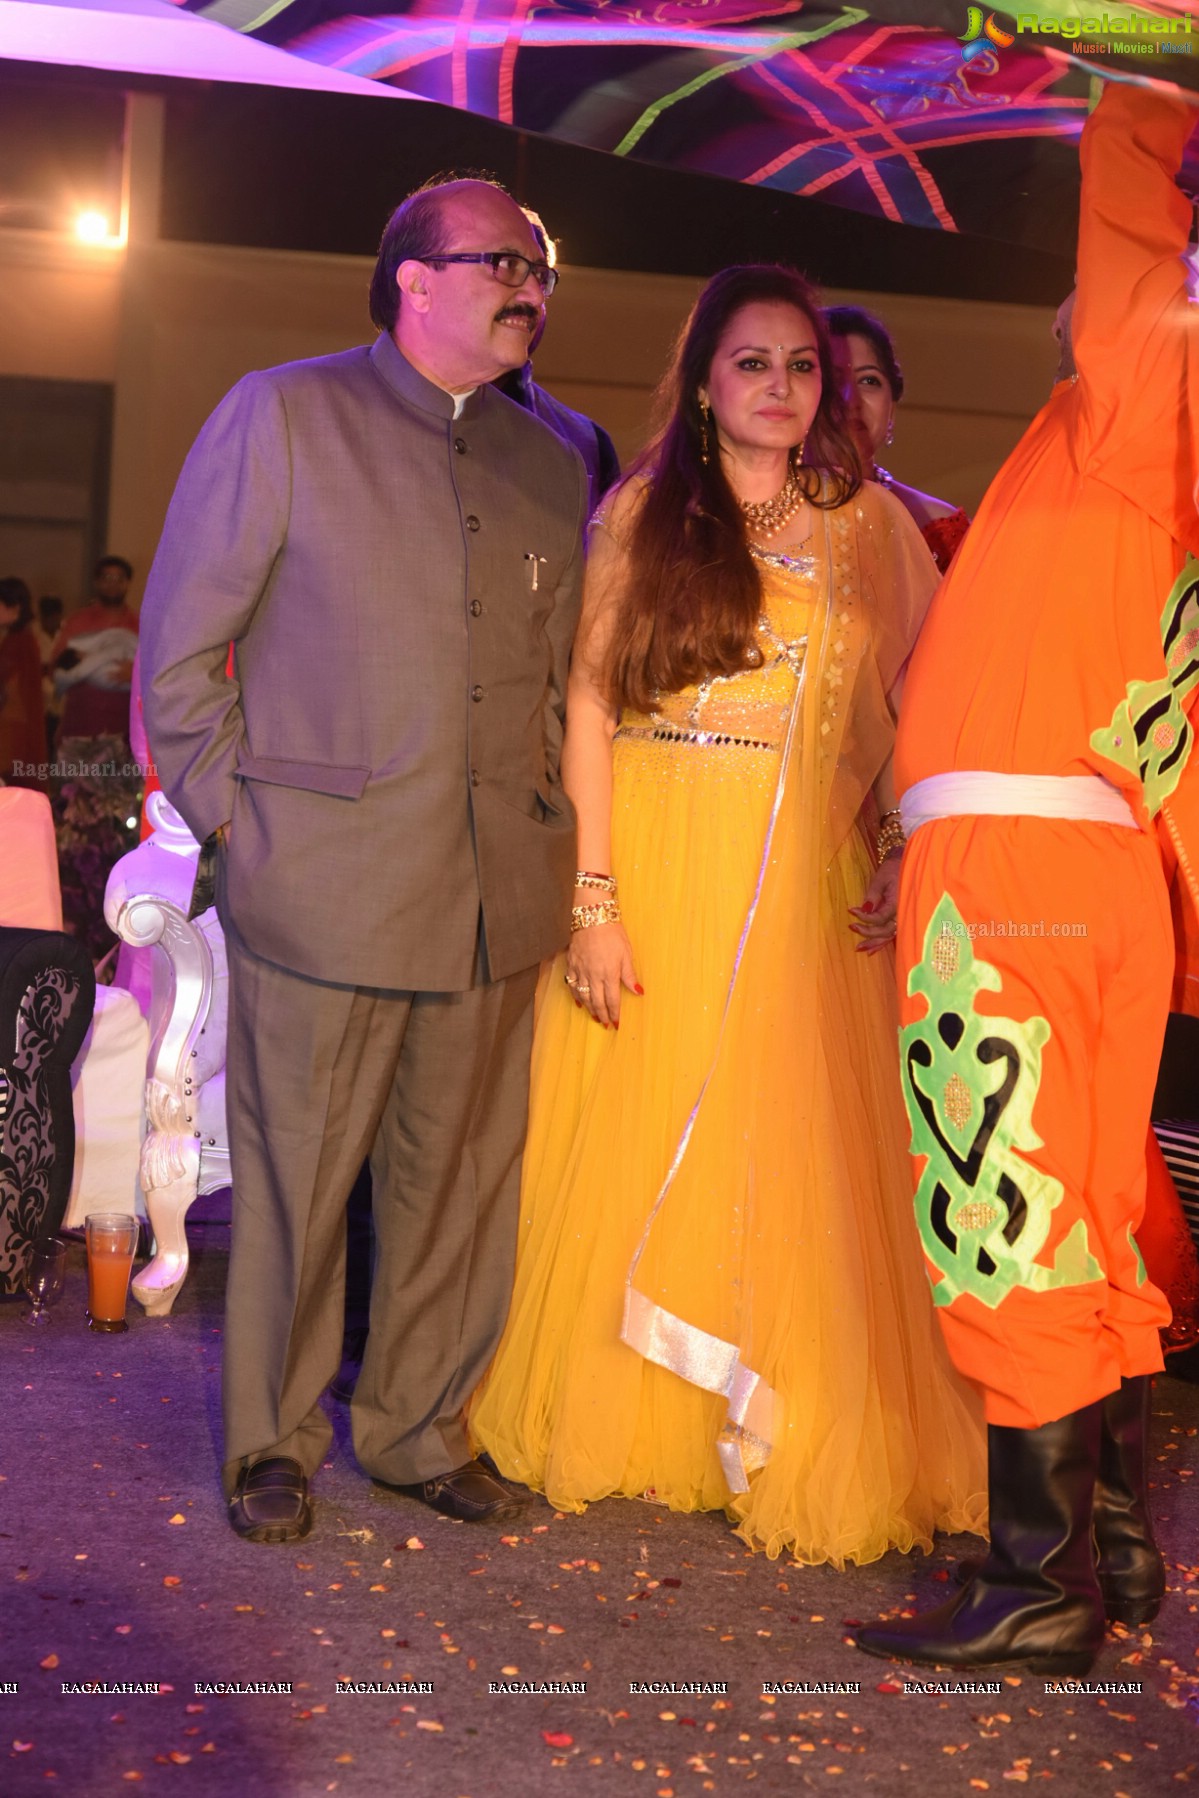 Grand Wedding Sangeet Ceremony of Jaya Prada's Nephew Siddharth-Pravallika Reddy 